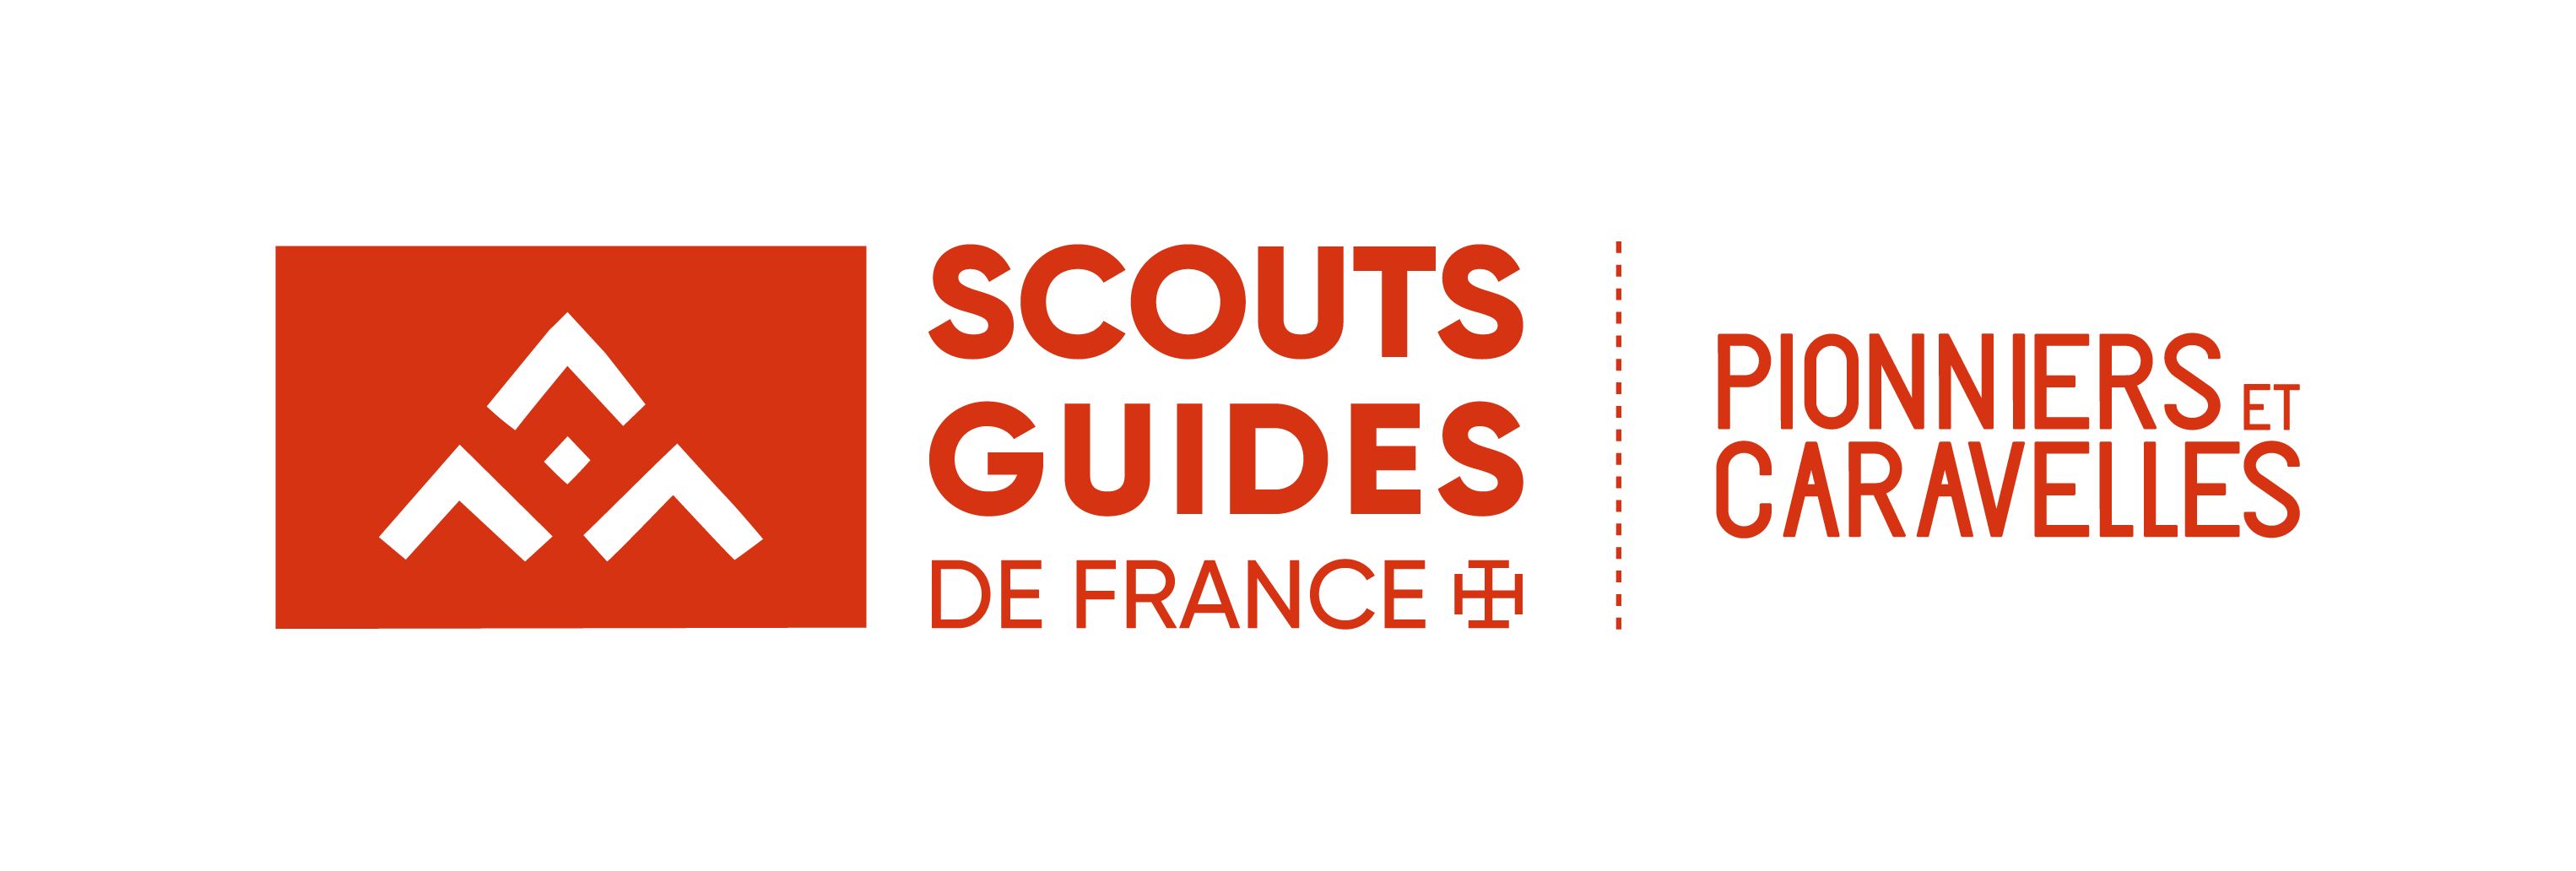 LES PIONNIERS-CARAVELLES - 14-17 ANS | Scouts & Guides de France LA NATIVITE